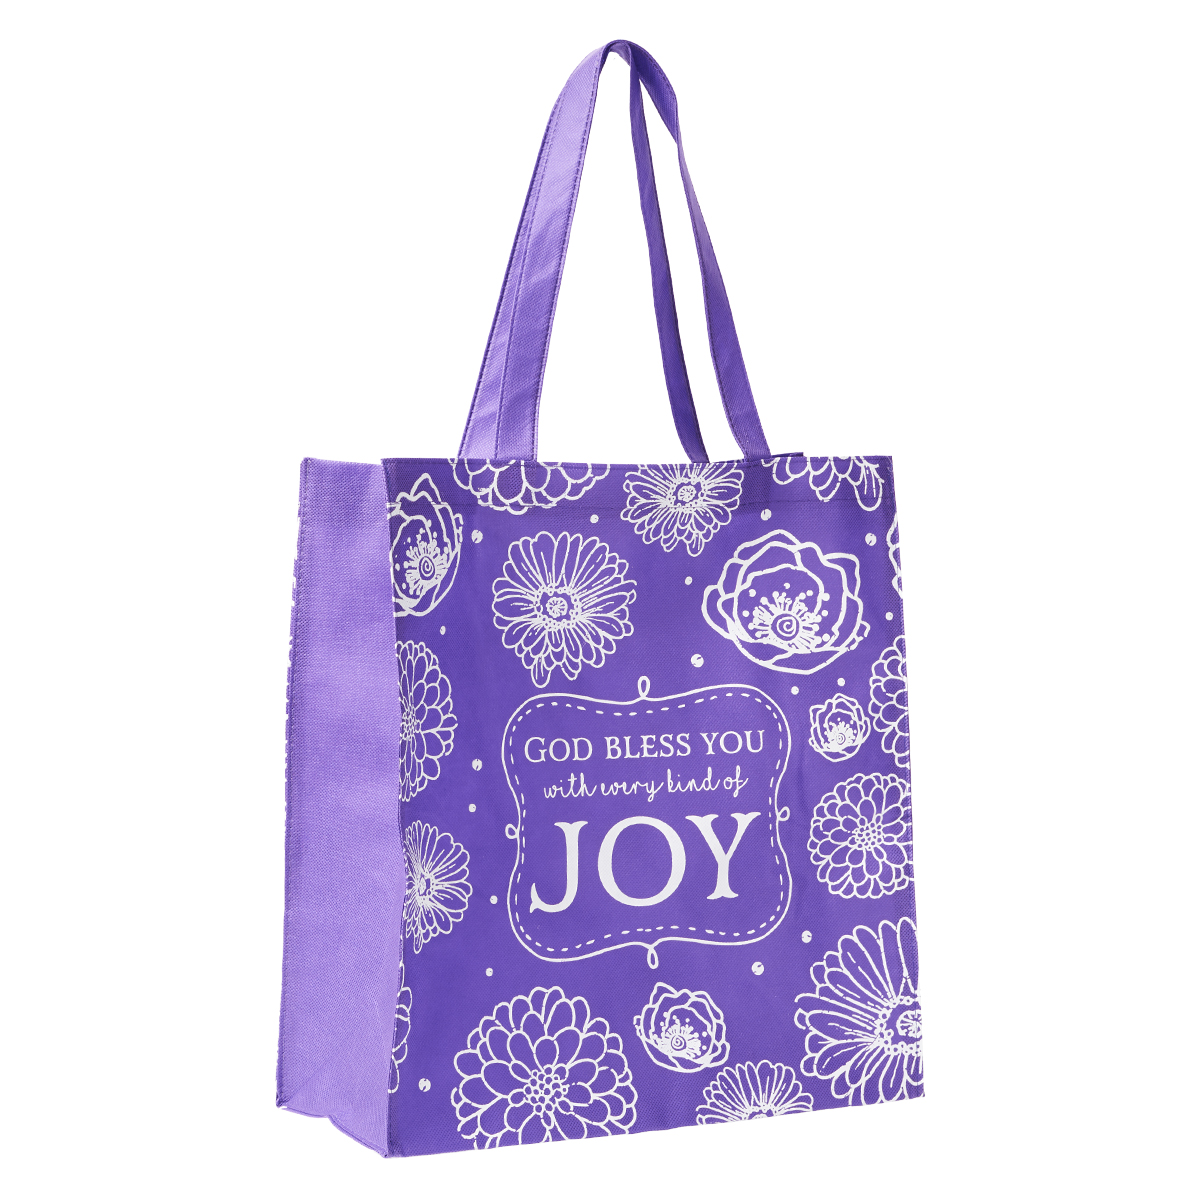 Every Kind Of Joy Tote Bag | Eden.co.uk